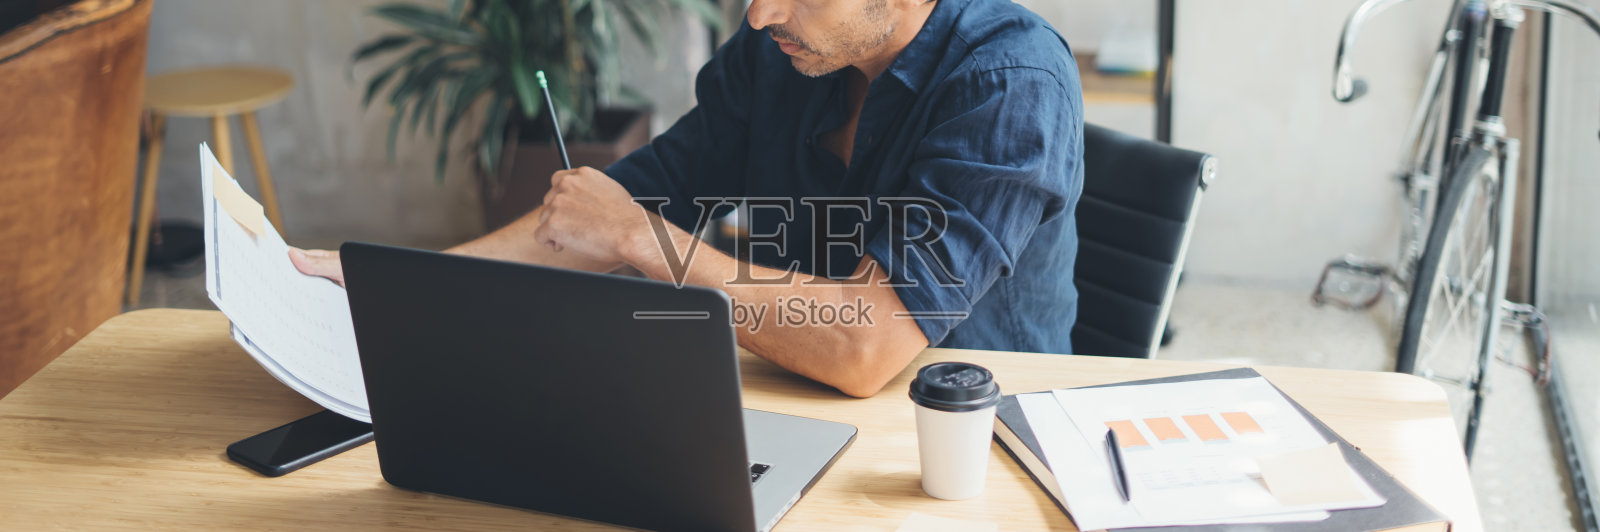 在光明工作室用笔记本电脑工作的人照片摄影图片